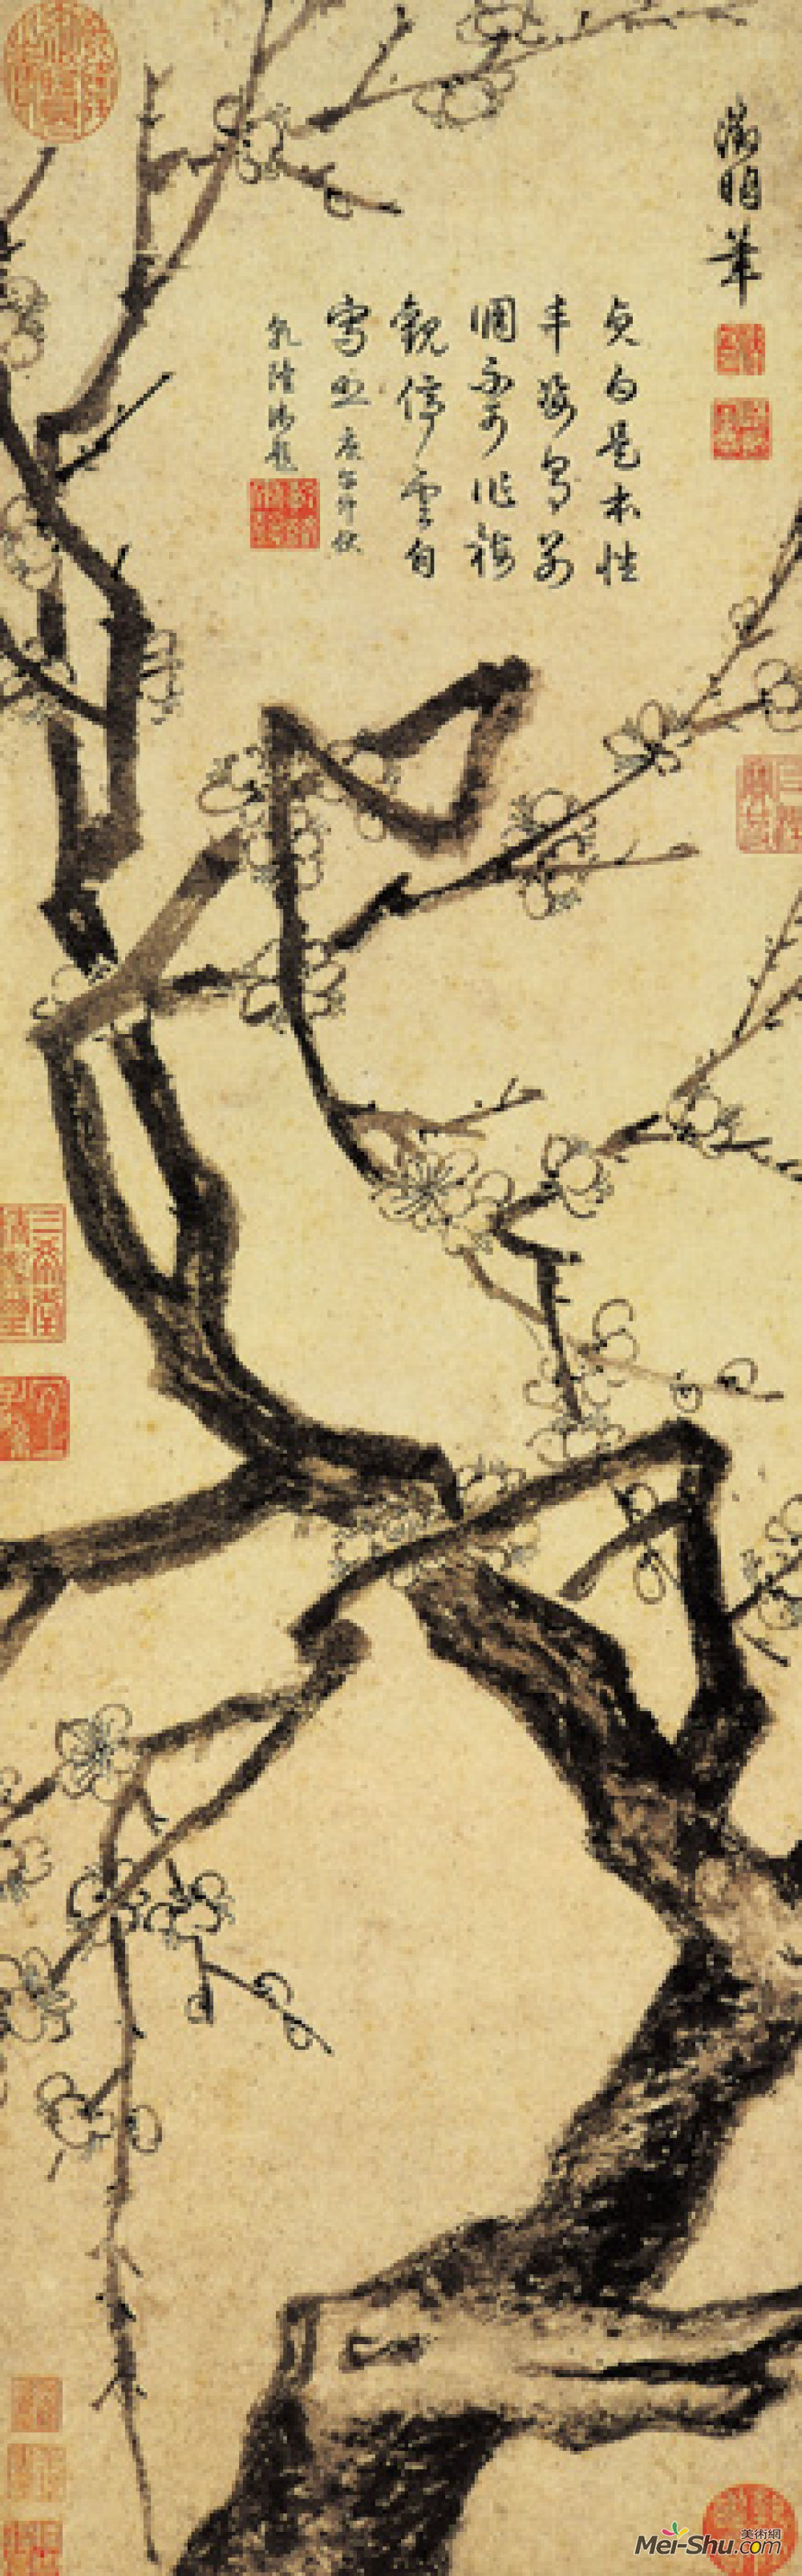 《冰姿倩影图》明文徵明纸本墨笔纵76.9厘米横24.5厘米南京博物馆藏